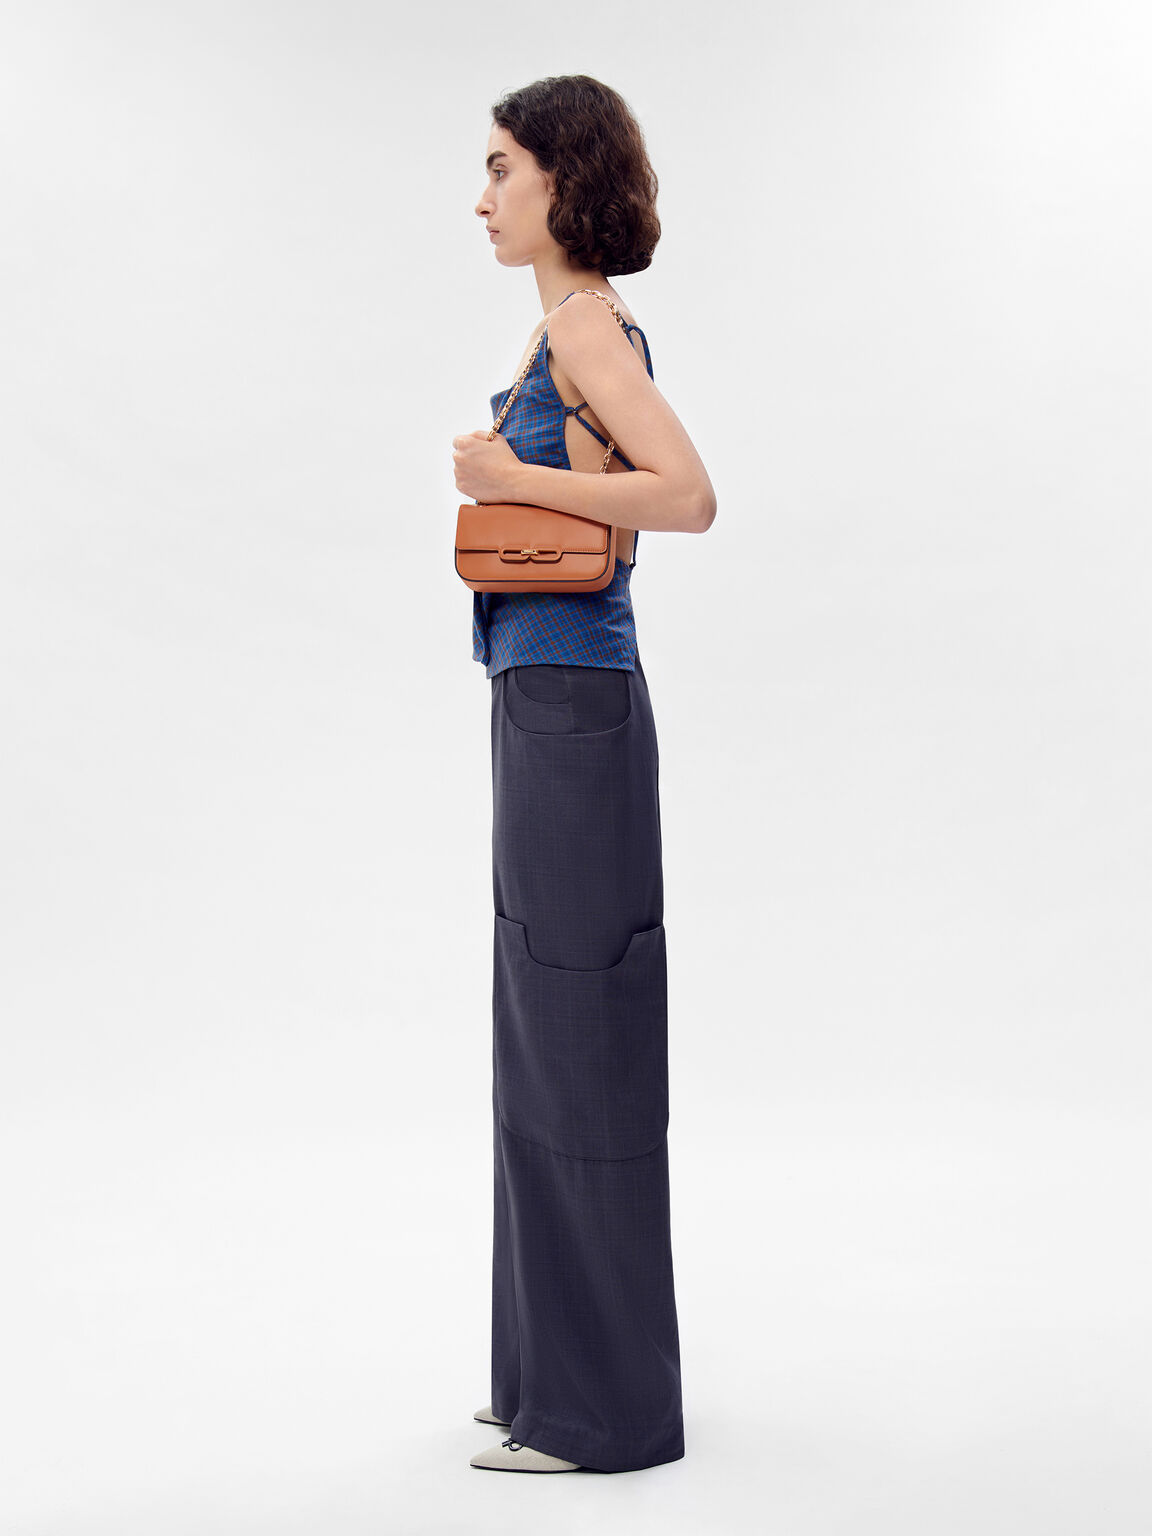 PEDRO Studio Kate Leather Shoulder Bag, Camel